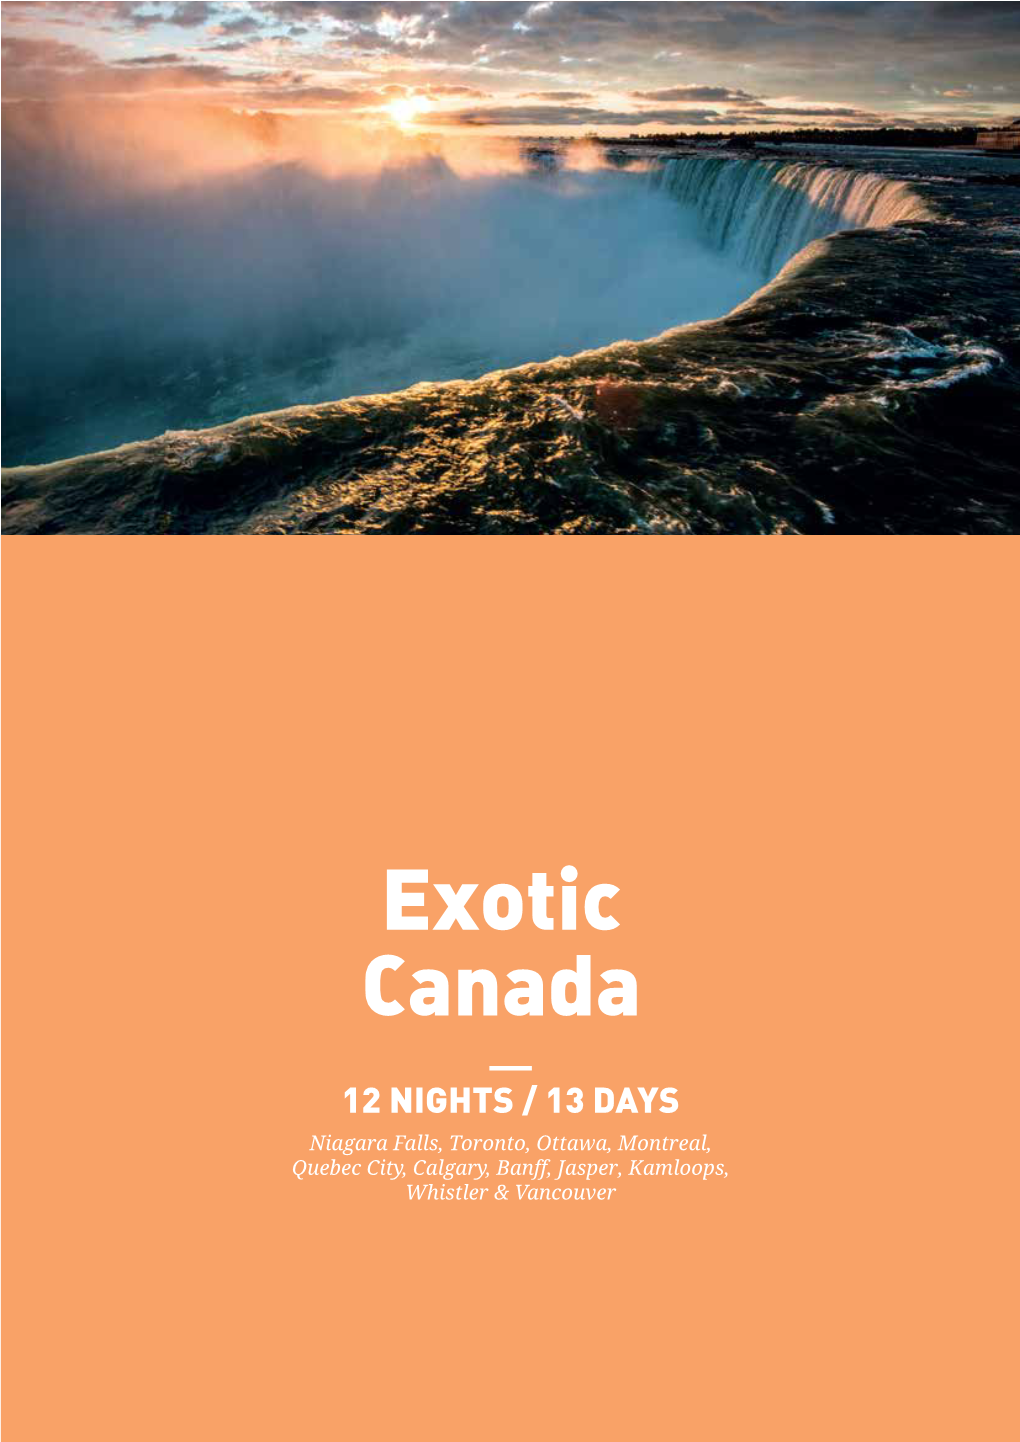 Exotic Canada